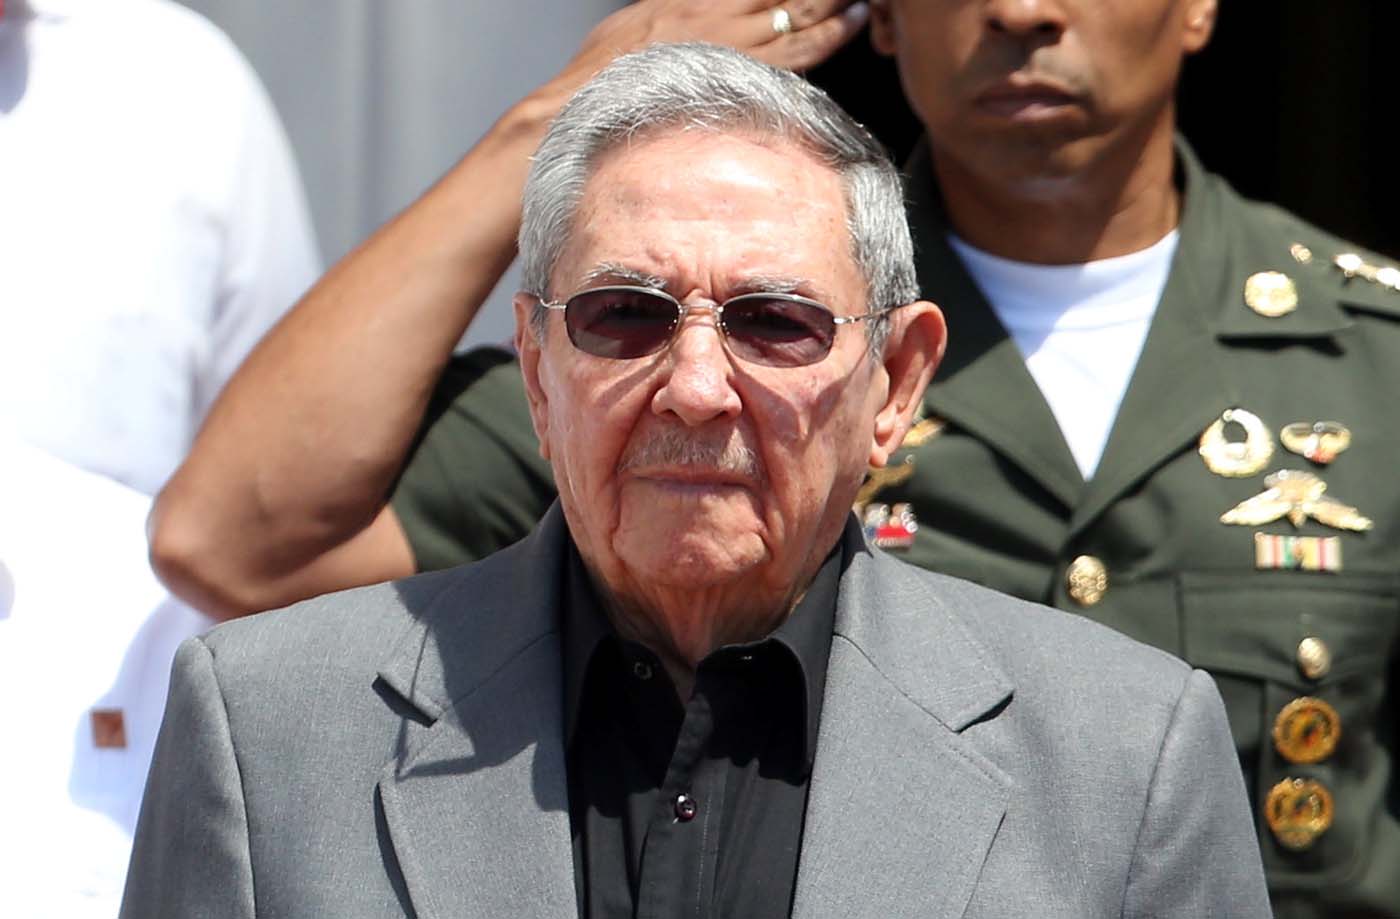 Raúl Castro encabeza lista negra de crímenes de lesa humanidad en Cuba